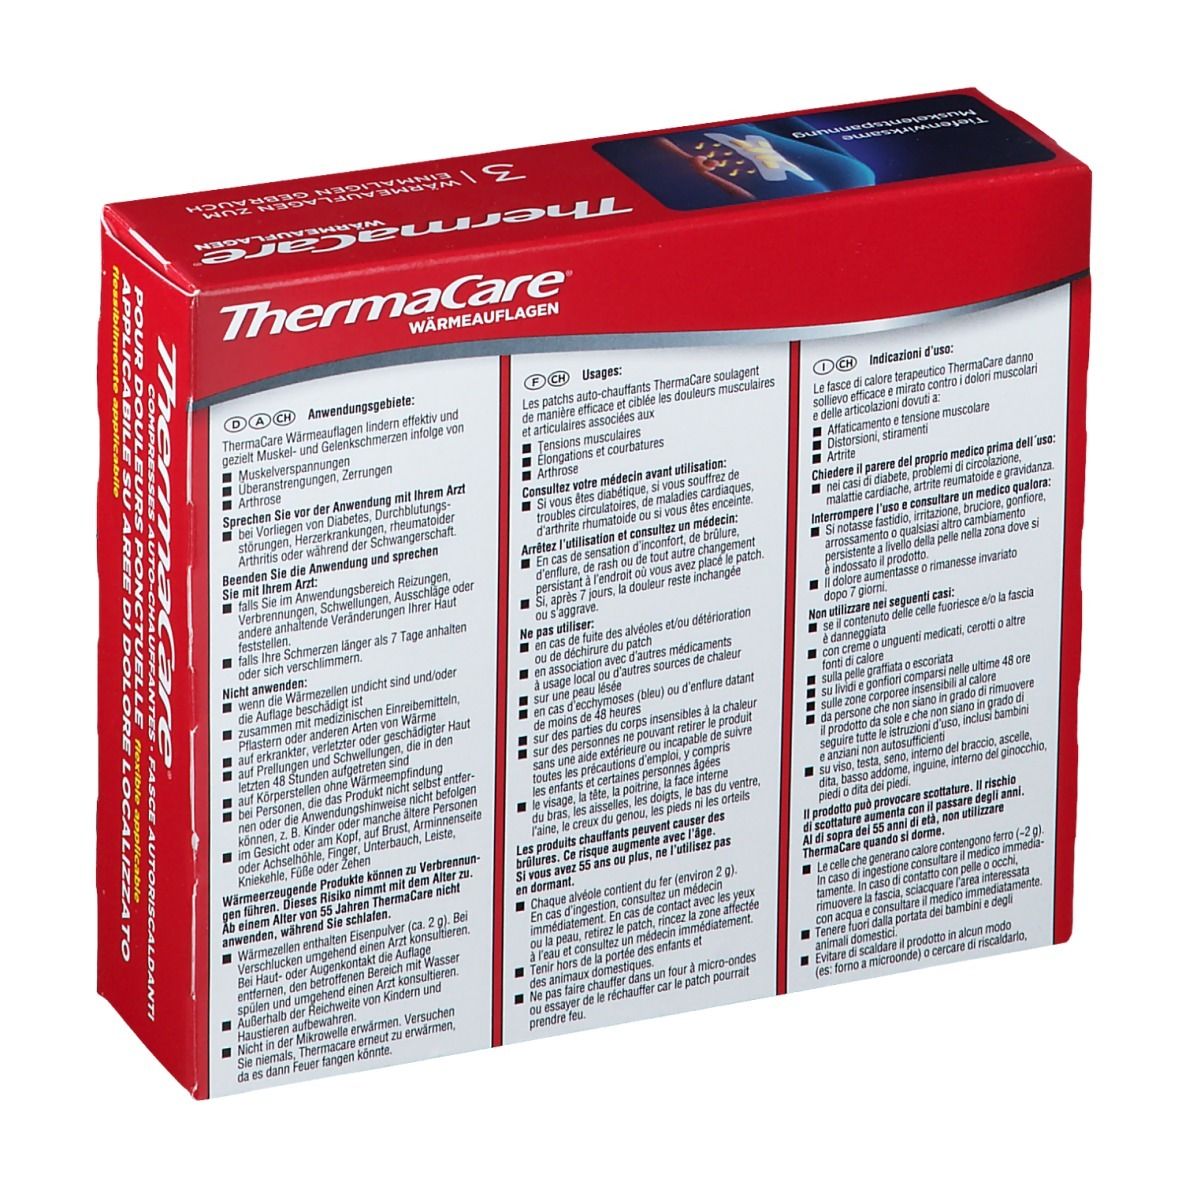 ThermaCare® Wärmeauflagen bei punktuellen Schmerzen